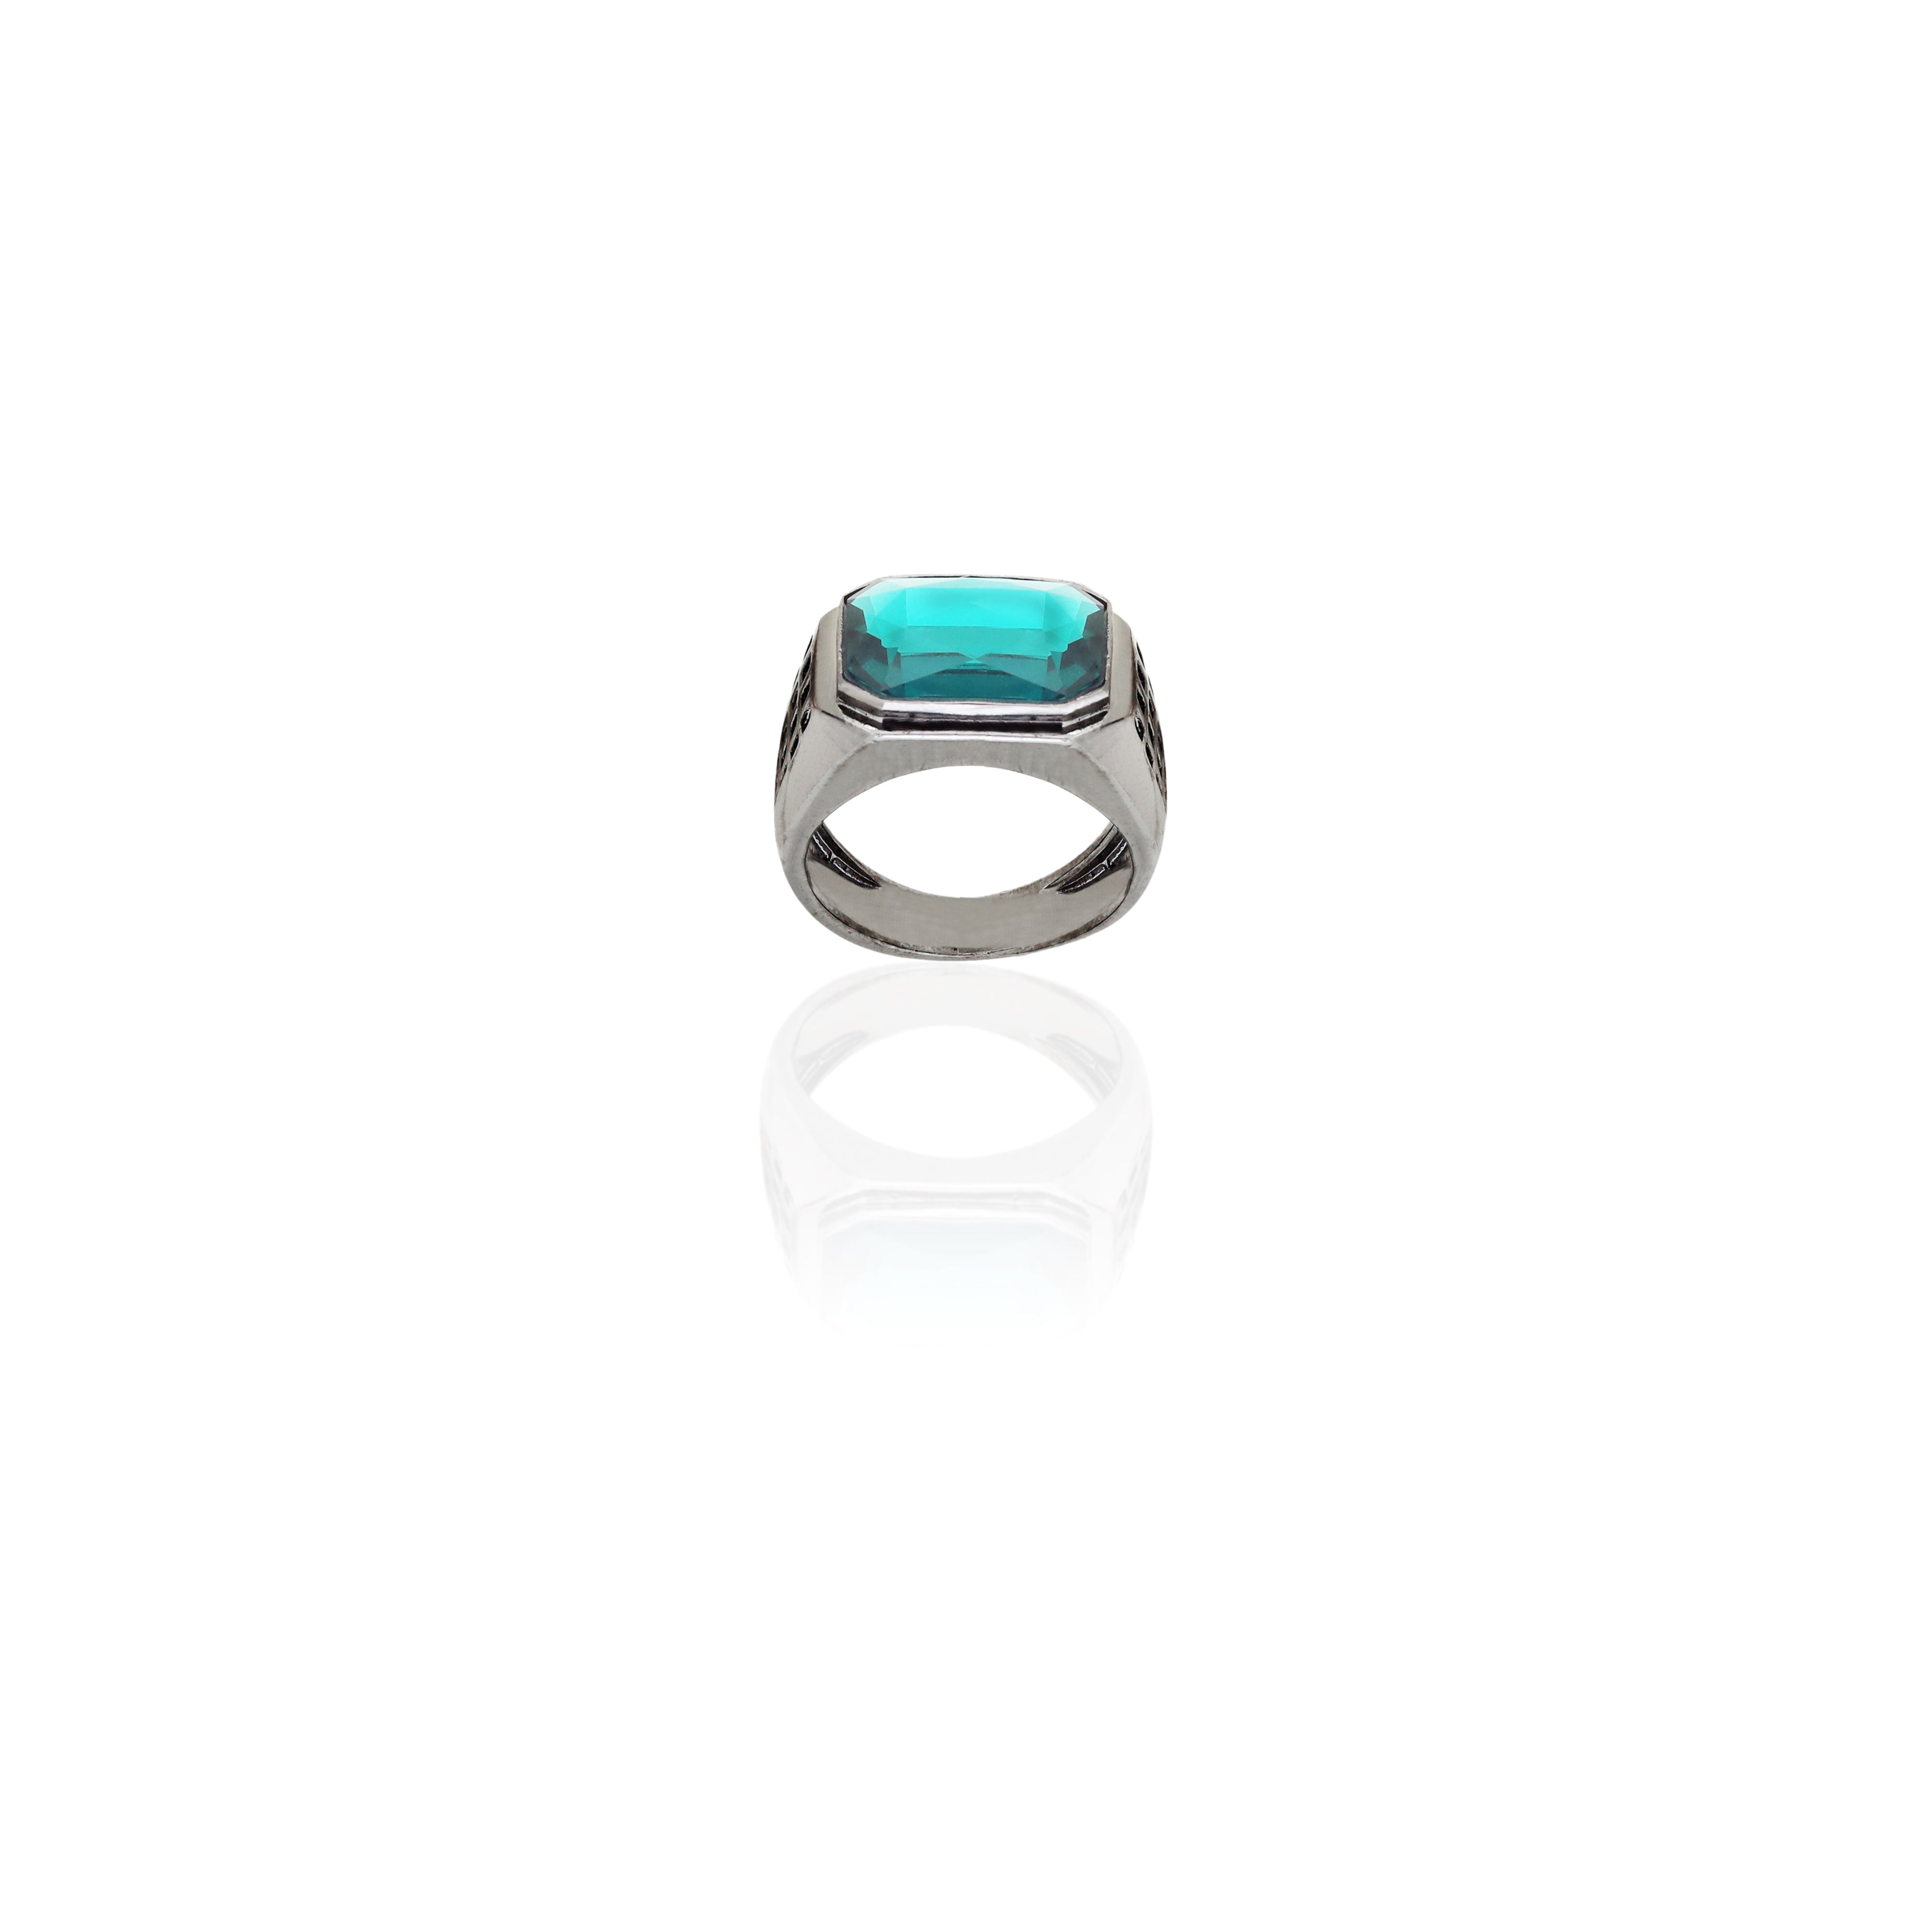 Esme Crystal - The Jade Ring